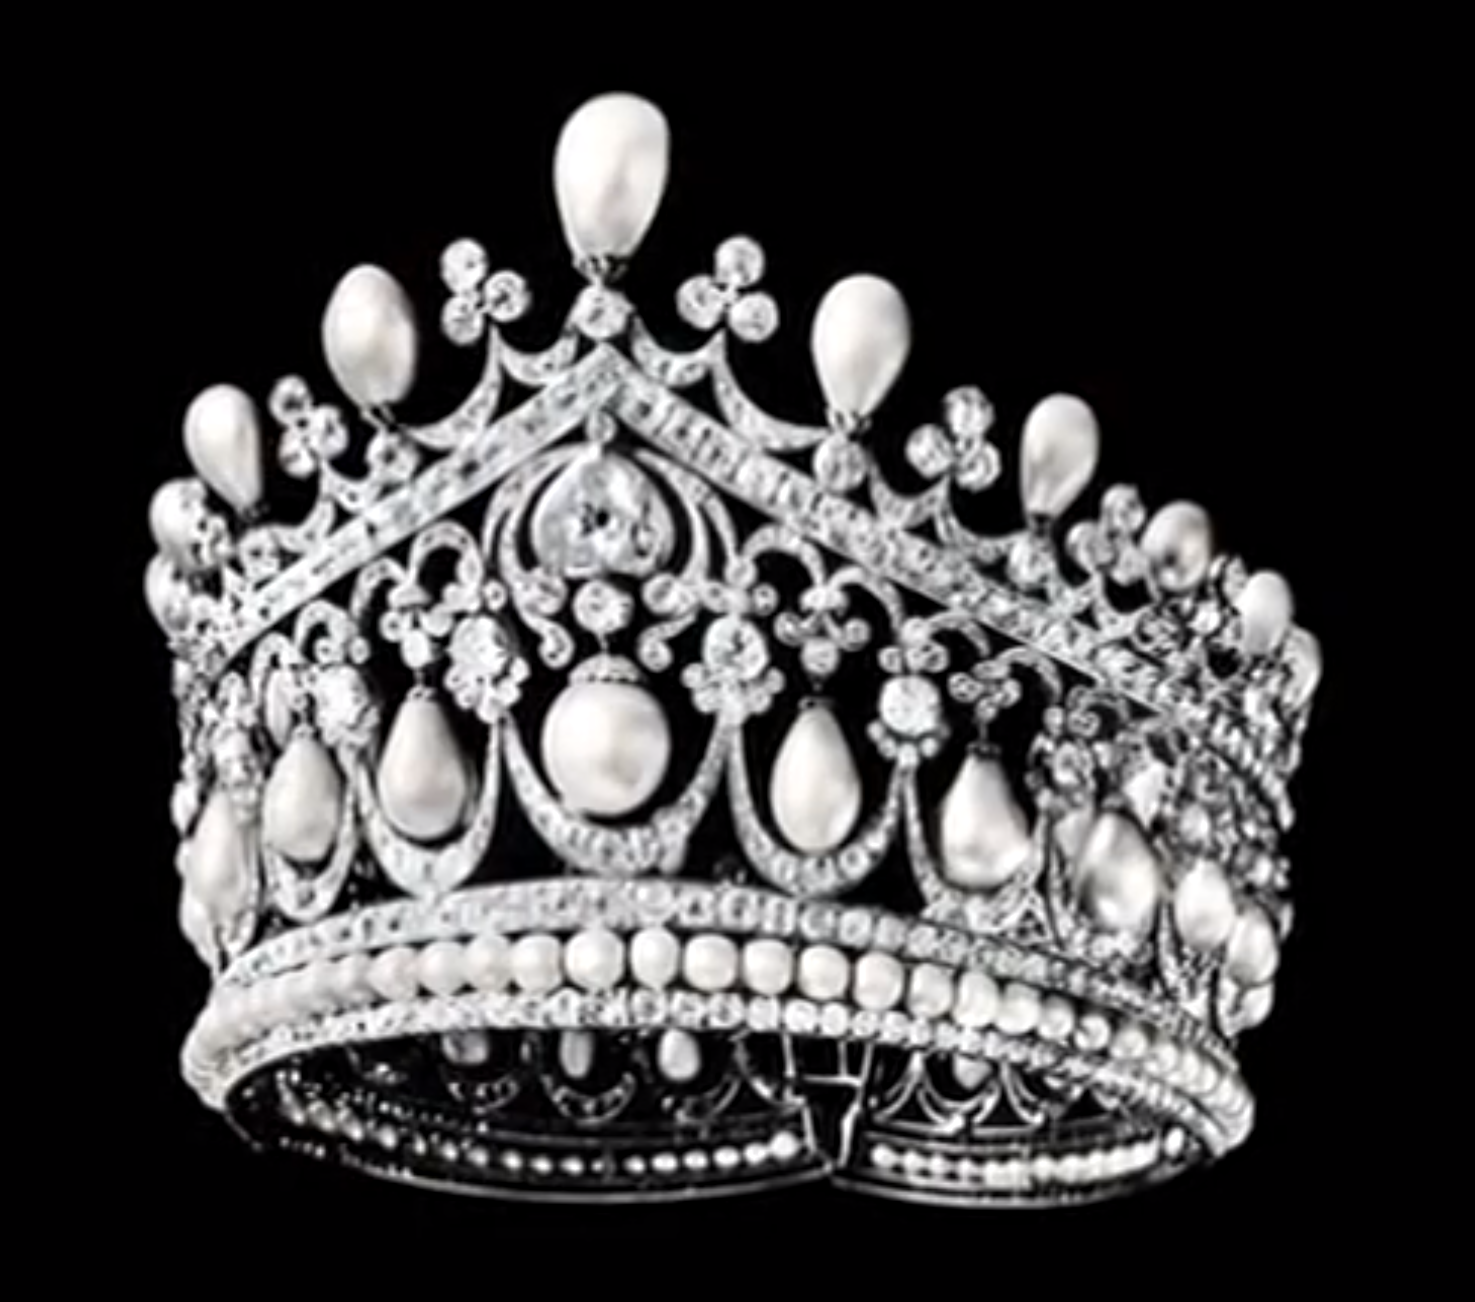 تيجان ملكية  امبراطورية فاخرة Empress+alexandra+russia+bolin+tiara+pearls+diamonds